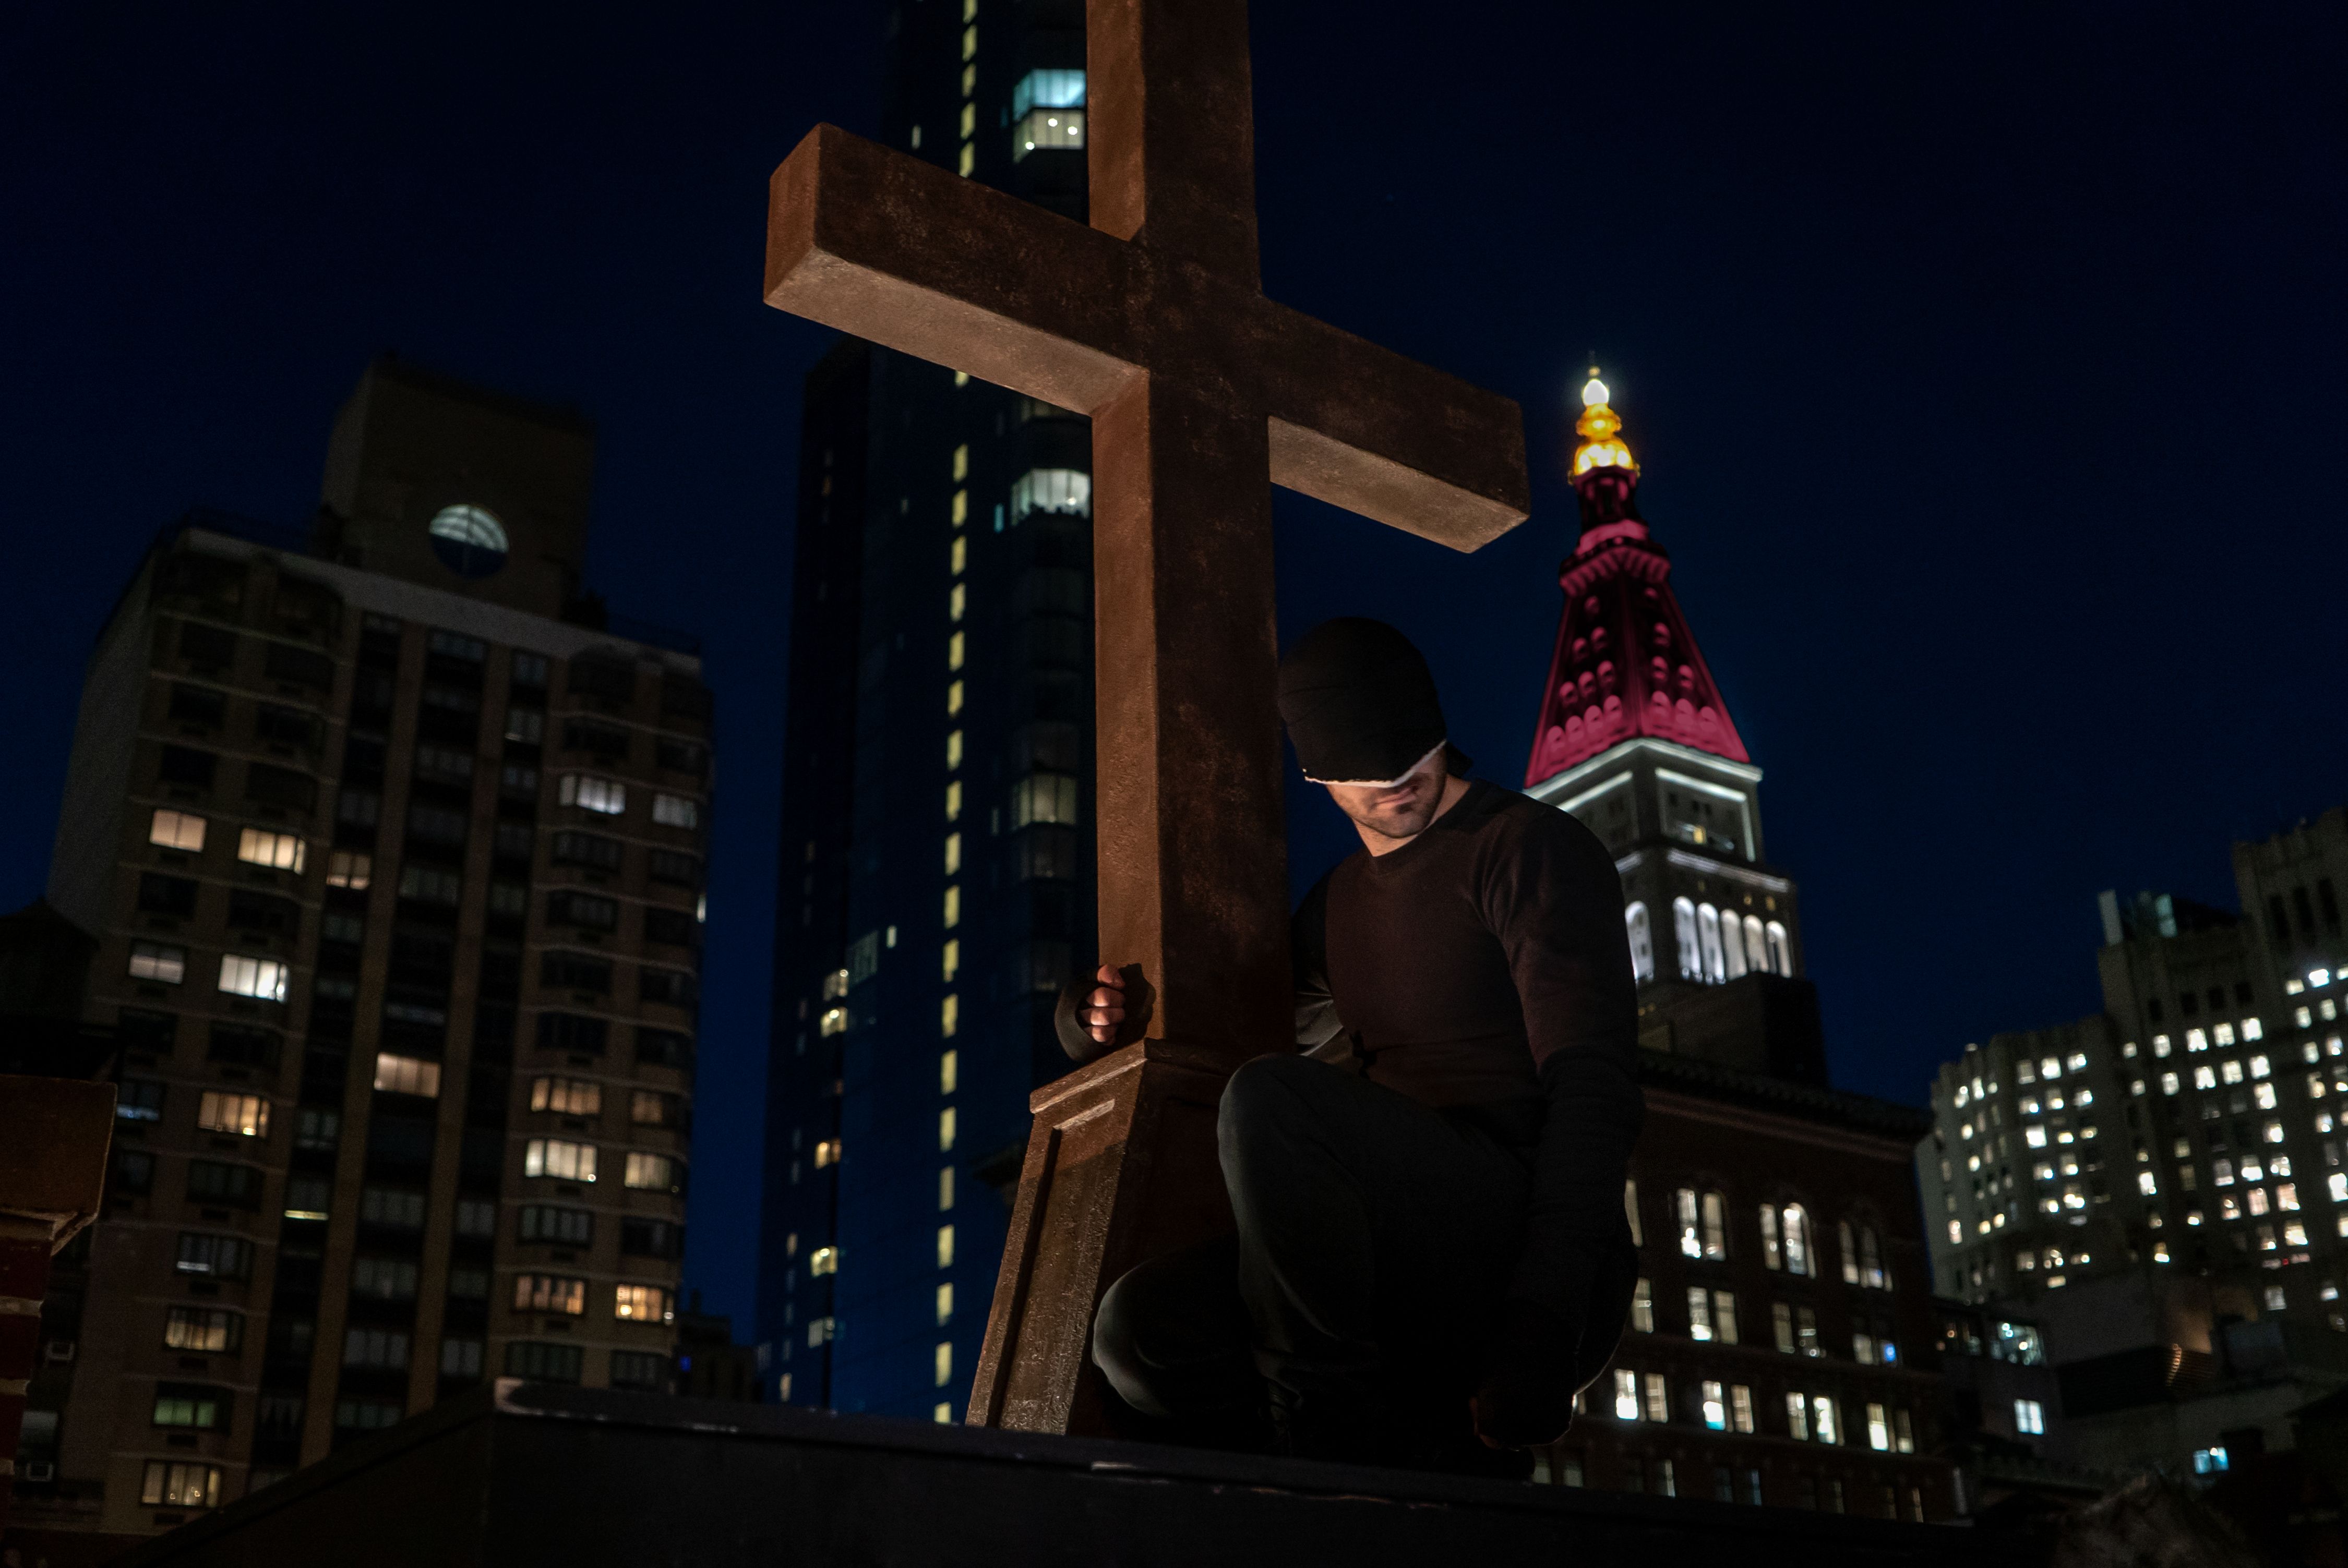 Daredevil drapes his arm around a cross in Season 3 photo.